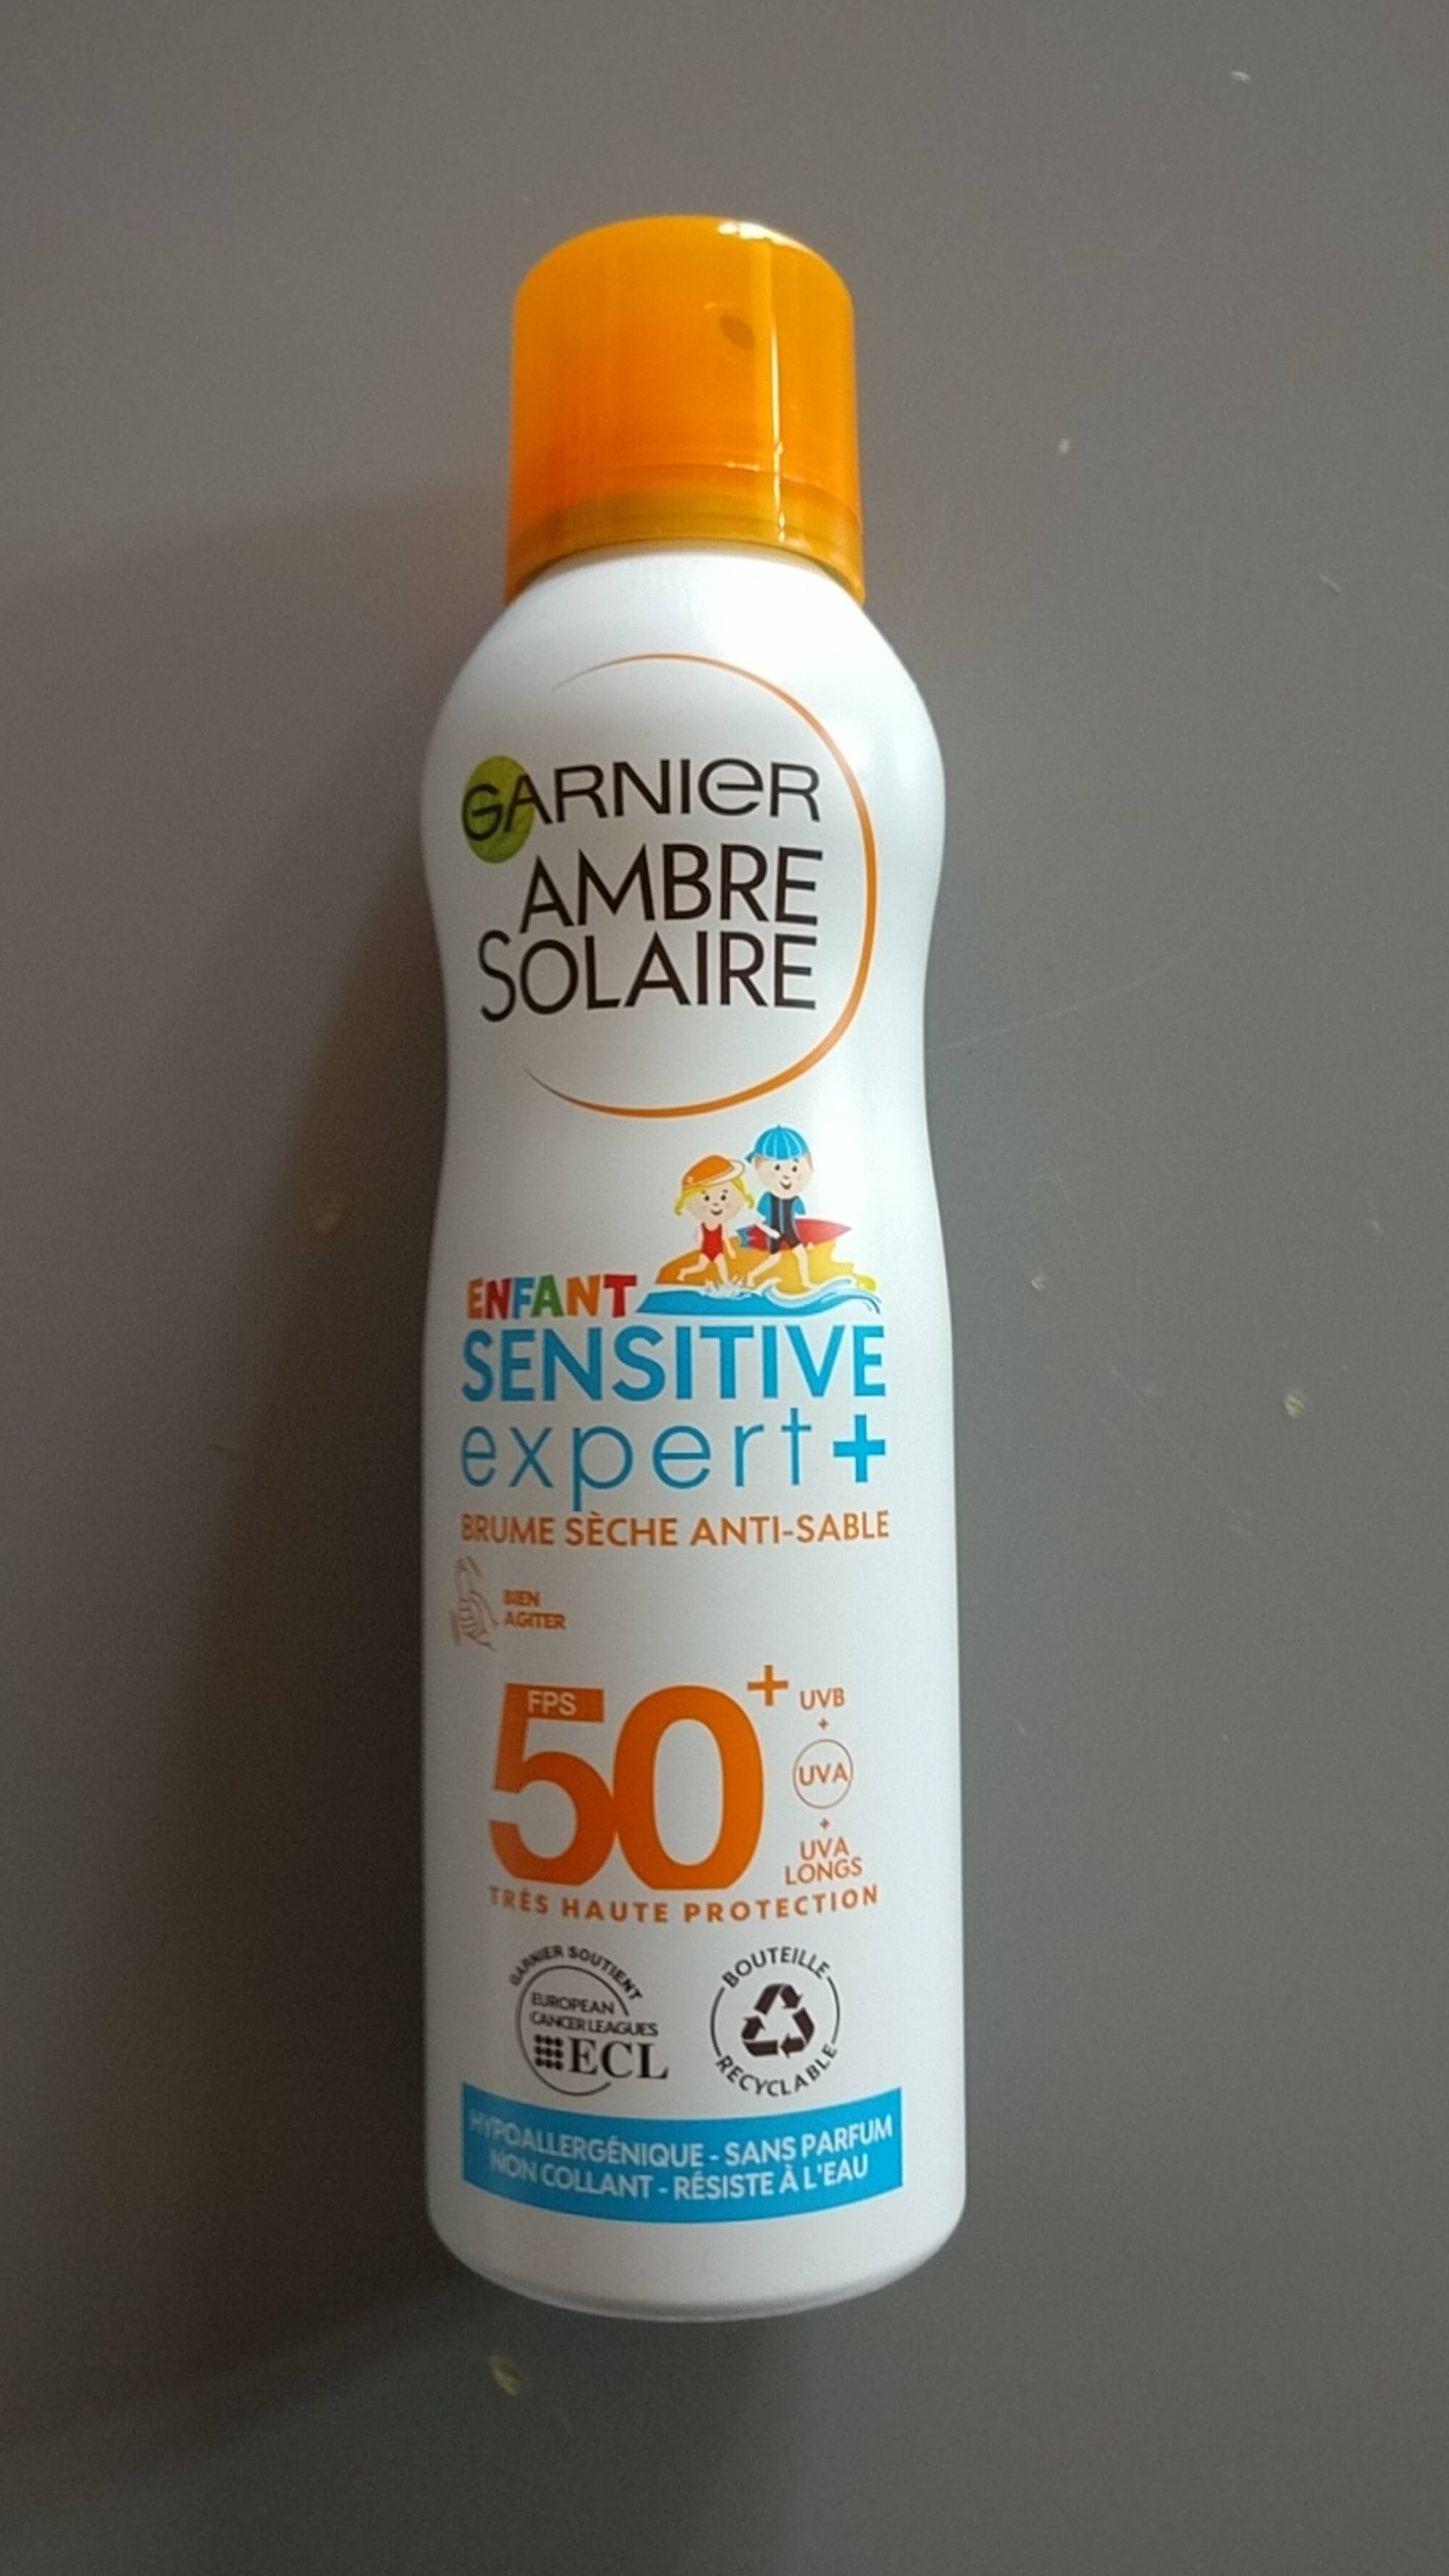 GARNIER - Ambre solaire enfant sensitive expert+ - Brume sèche anti-sable FPS 50+